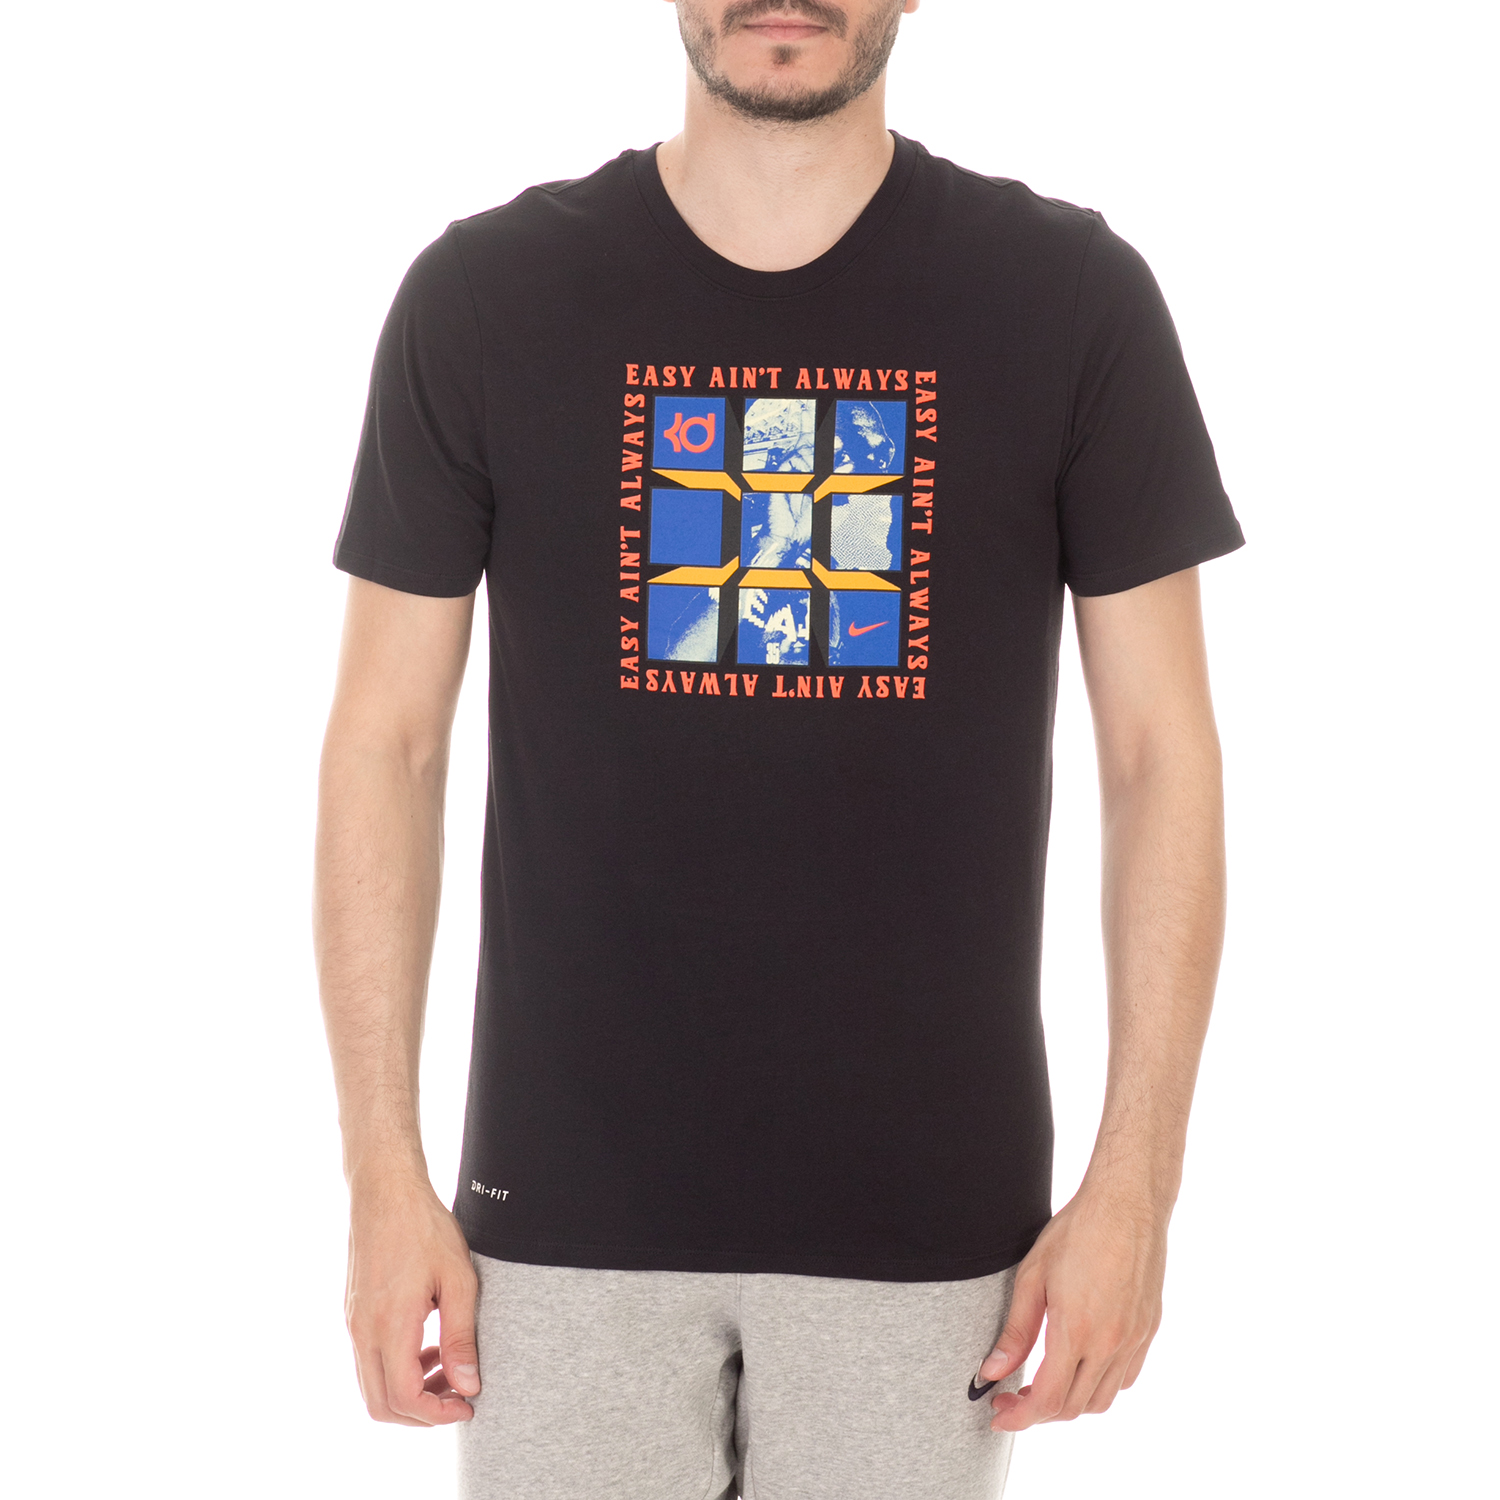 Ανδρικά/Ρούχα/Αθλητικά/T-shirt NIKE - Ανδρική μπλούζα NIKE KD M NK DRY TEE 1 μαύρη